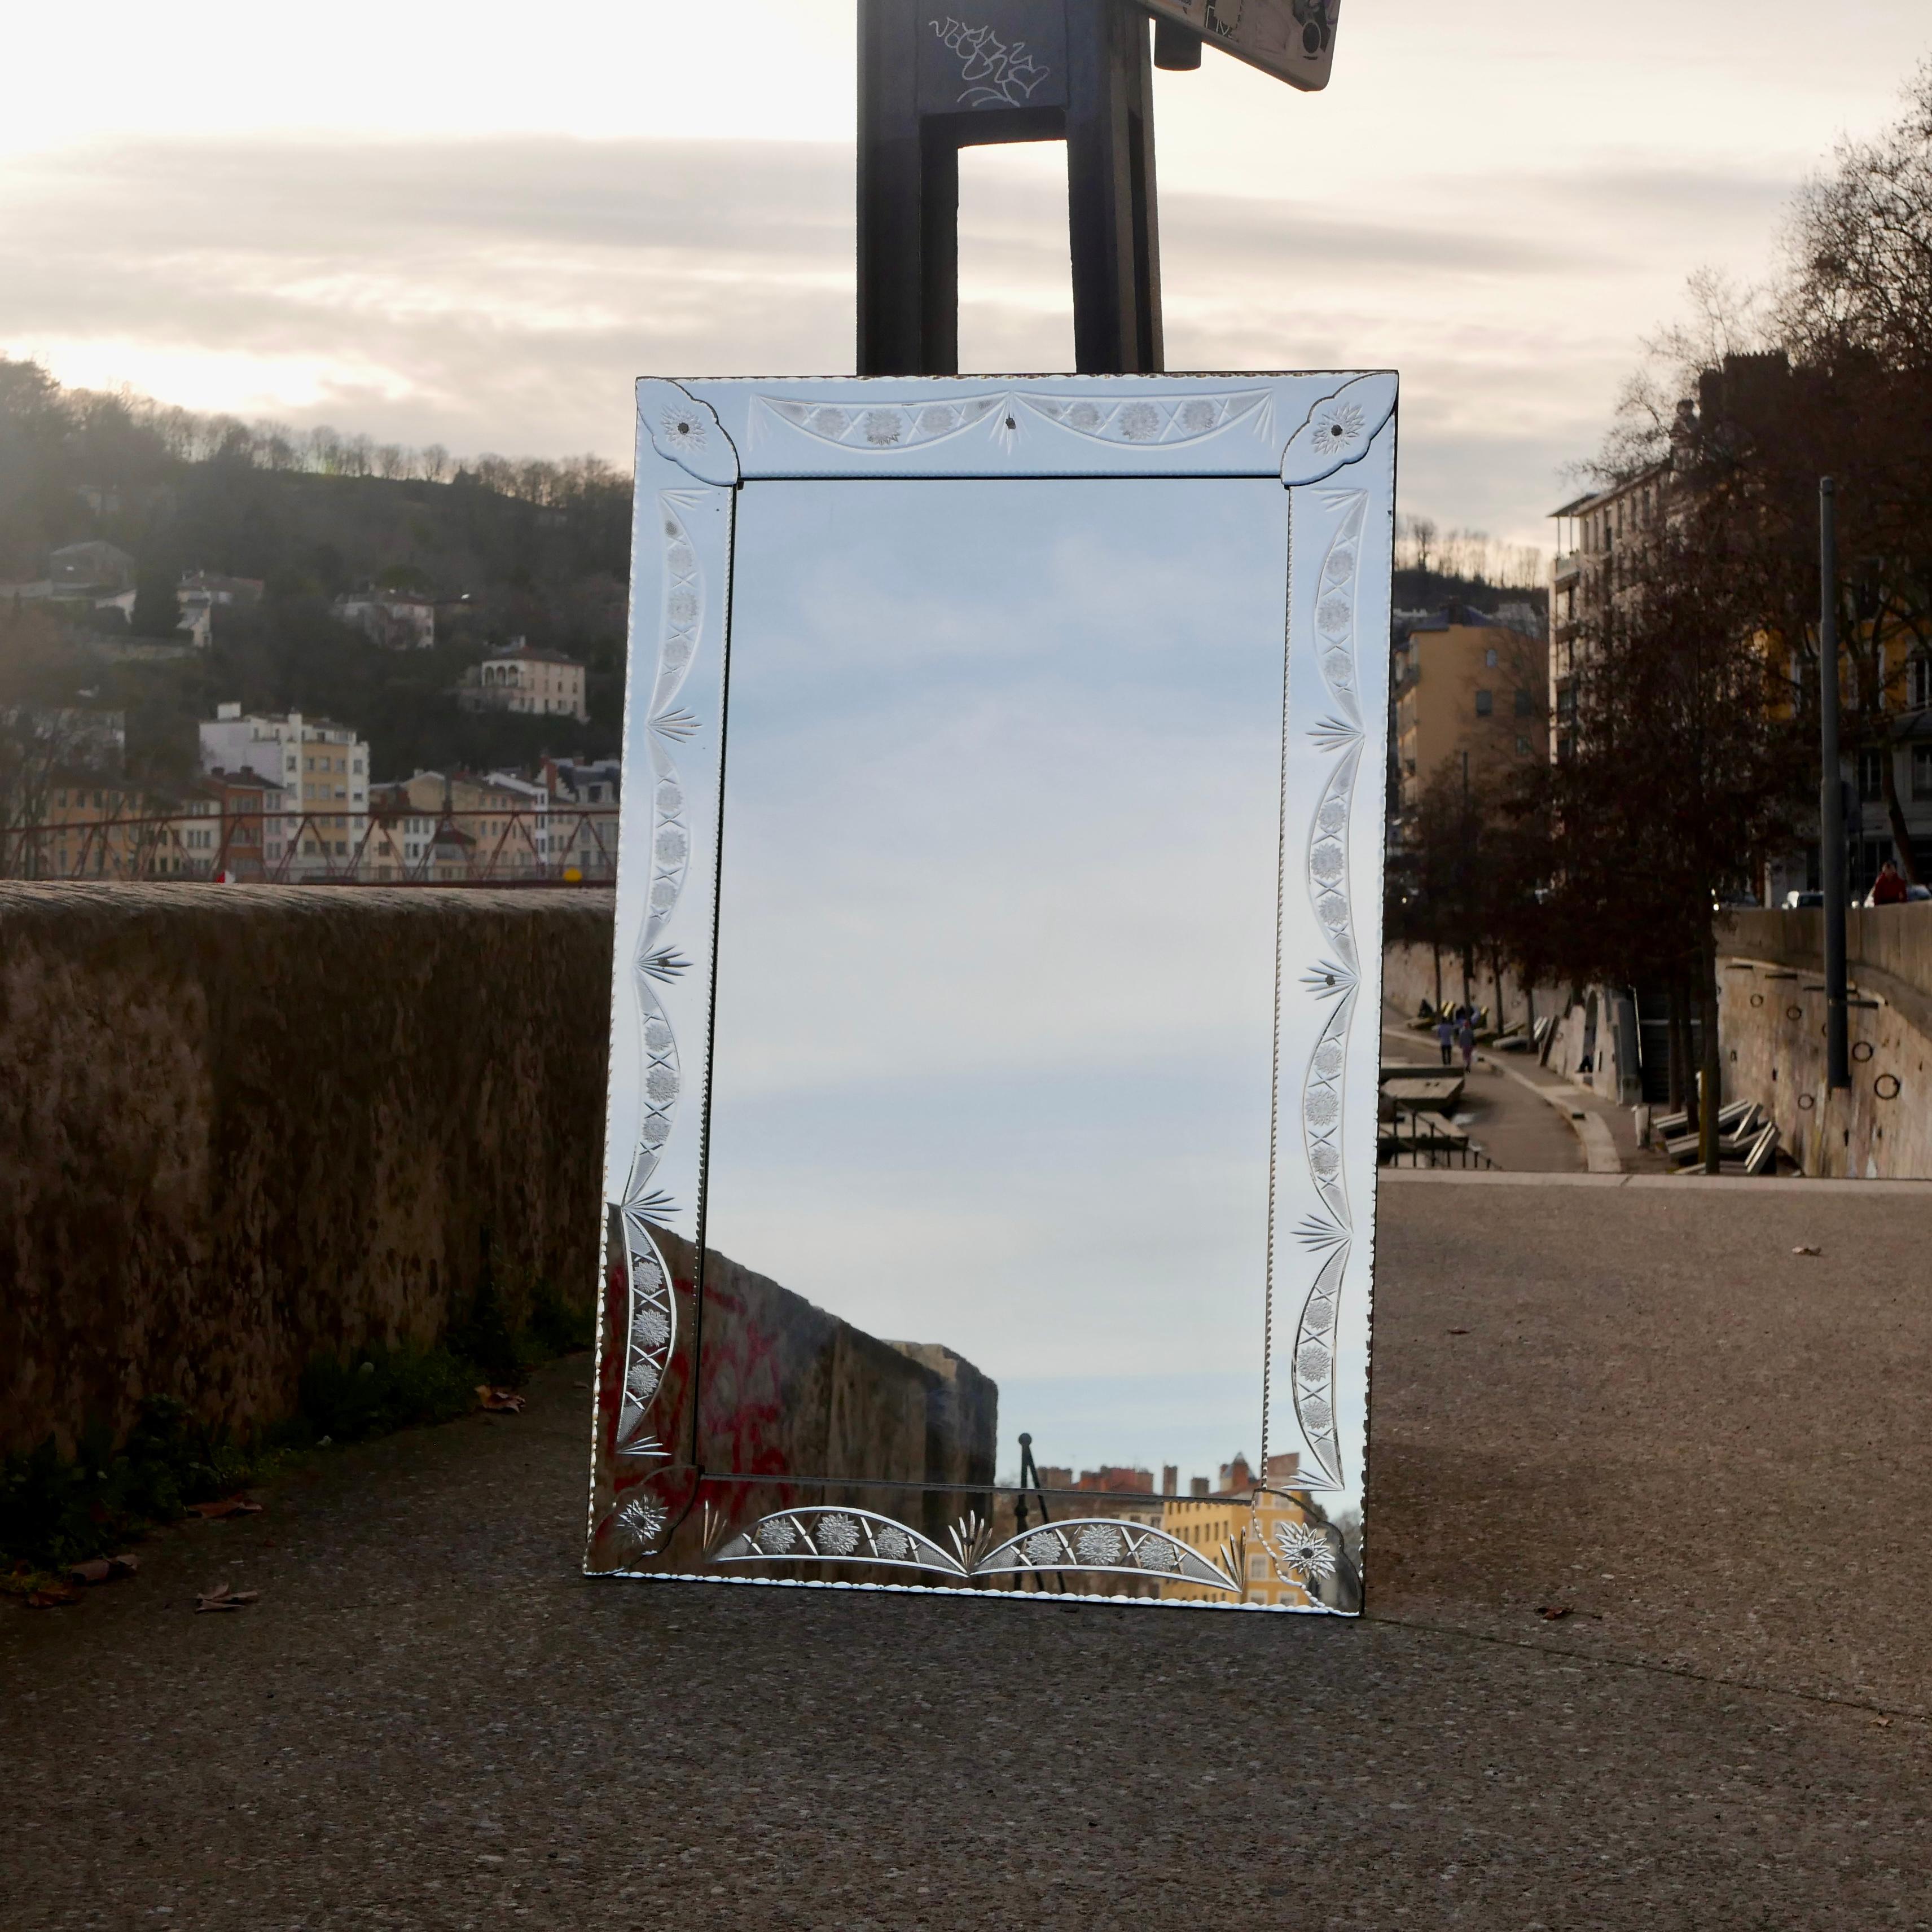 Magnifique grand miroir de style vénitien des années 1960, Italie, avec verre gravé et petites fleurs en verre.
Grandes dimensions, très bon état.
Dimensions : H150cm, L96cm